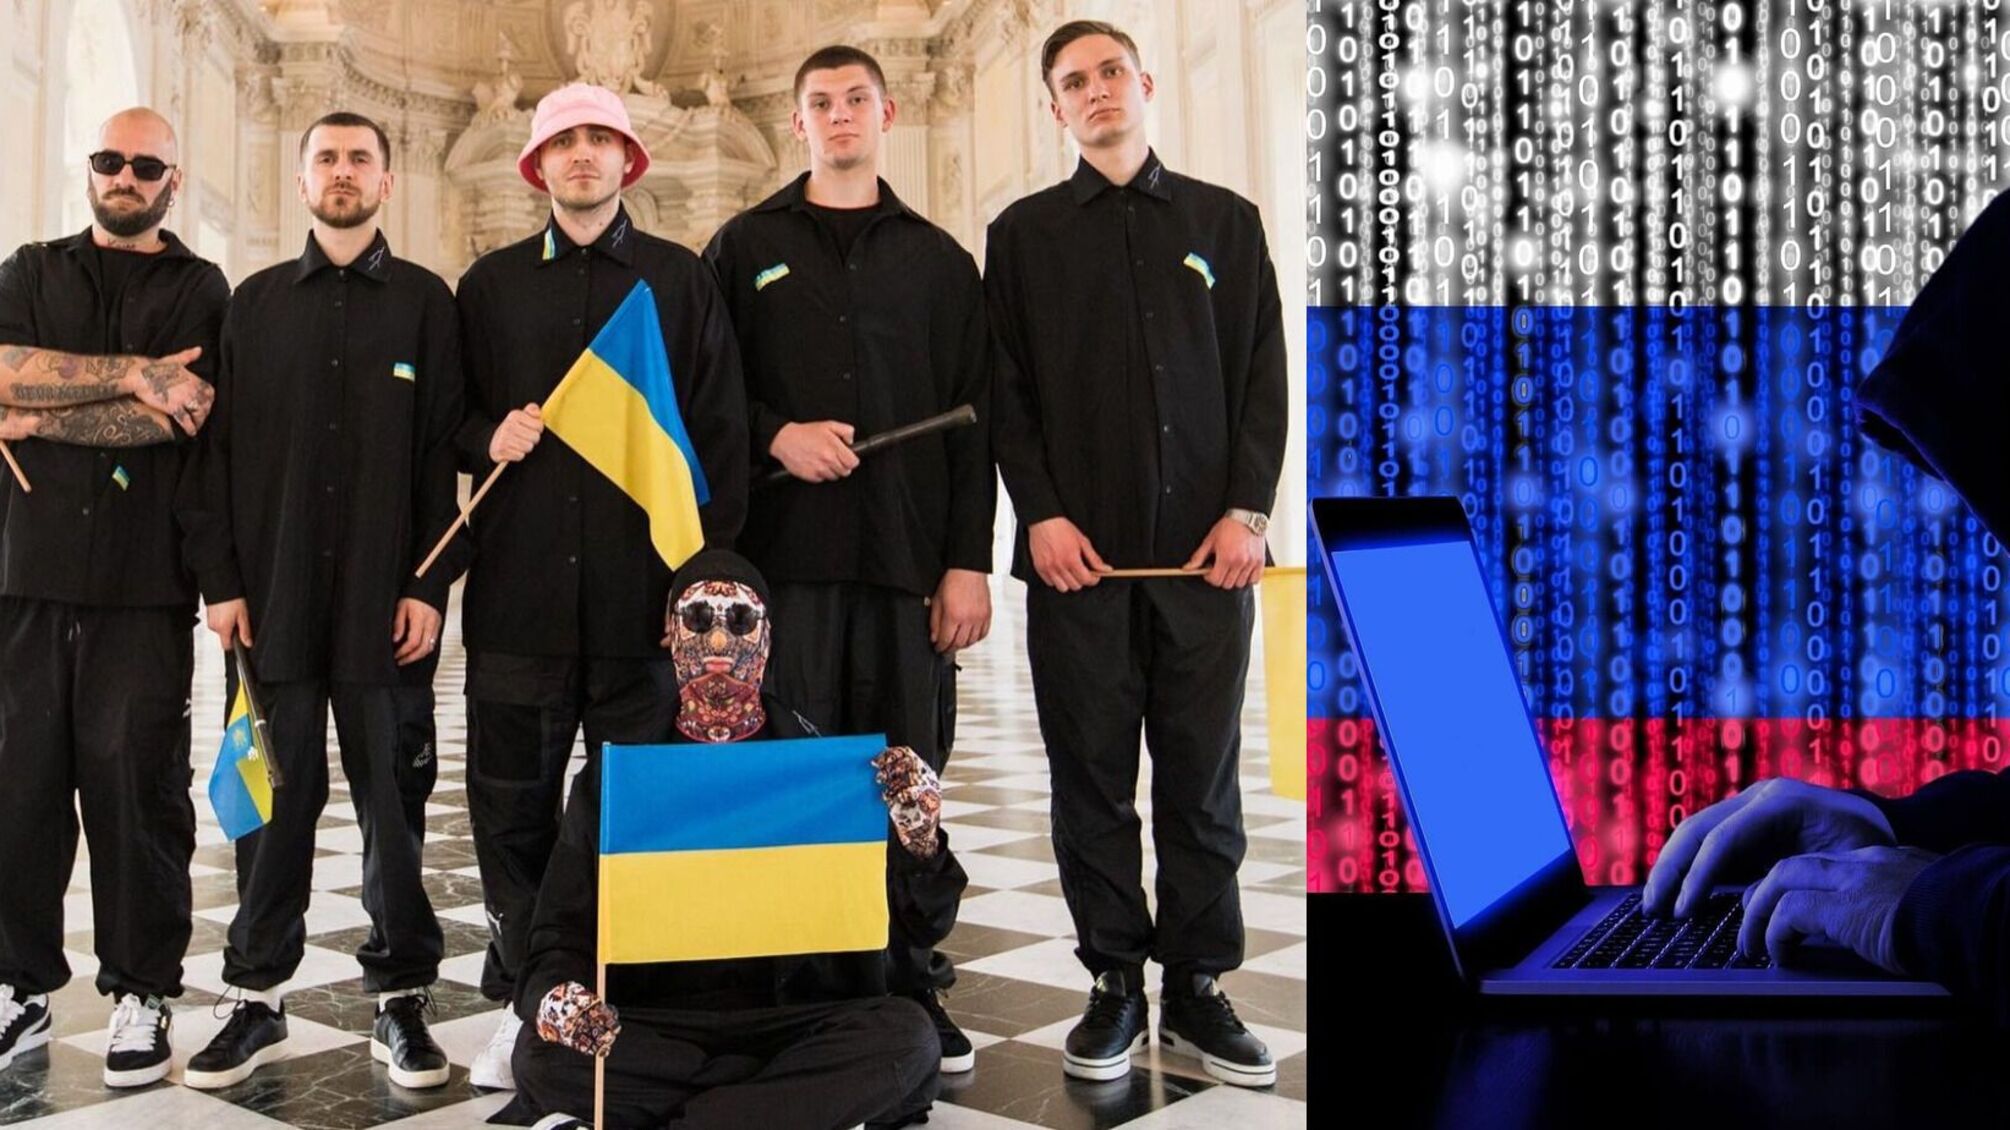 Российские хакеры попытаются помешать победе украинской группы на Евровидении